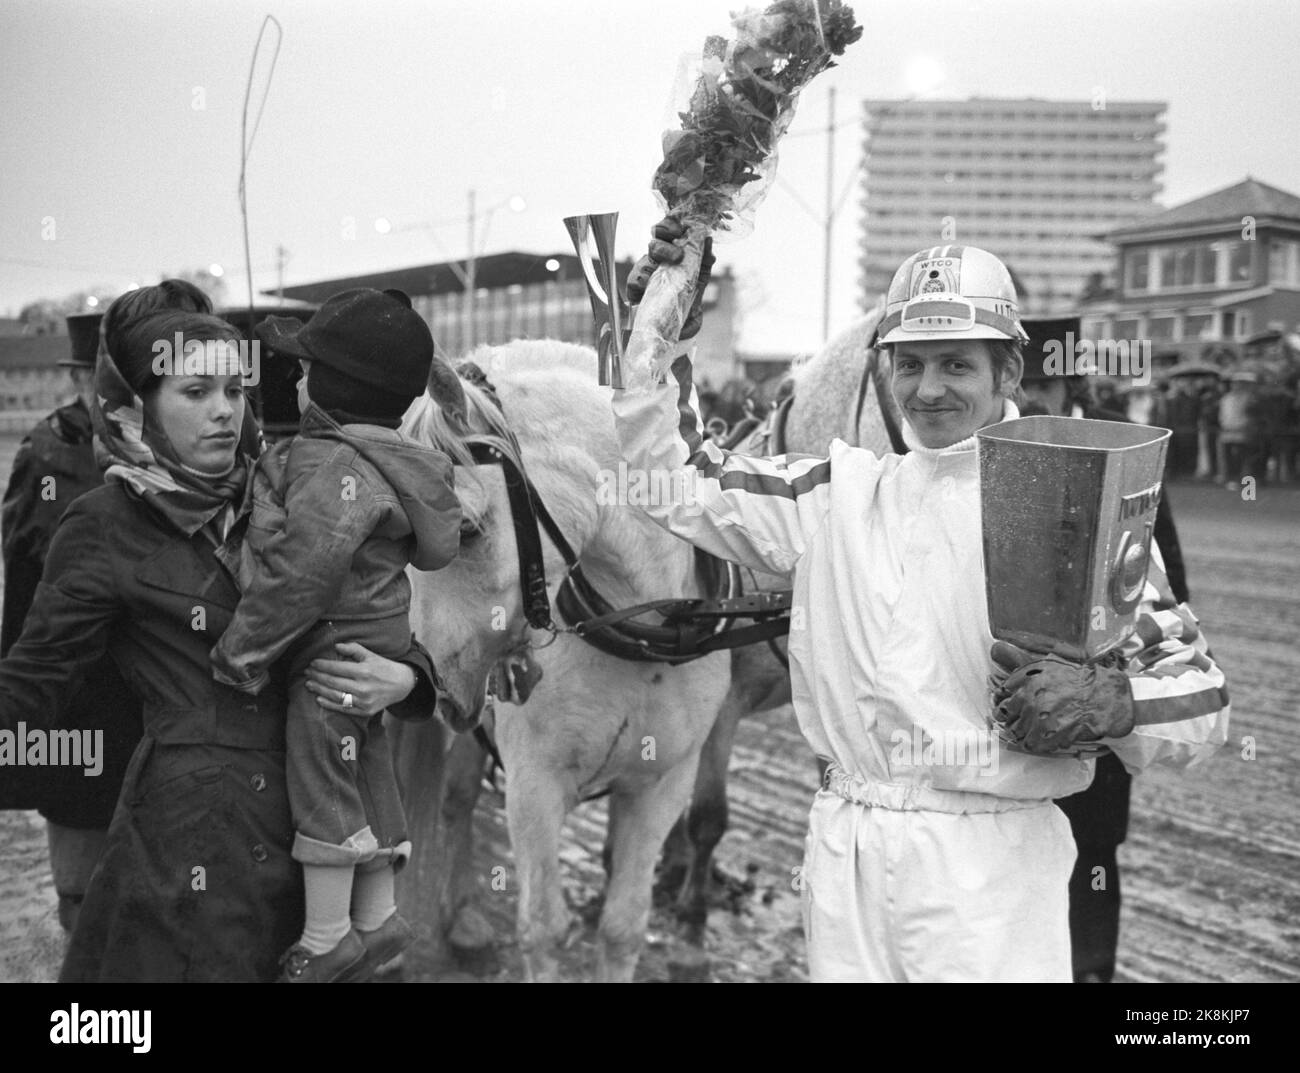 Oslo 5. Mai 1973. Ulf Thoresen (27) Norwegens erster Weltmeister im Traben. Hier mit Trophäe und Blumen. Foto: Ivar Aaserud / Aktuell / NTB Stockfoto